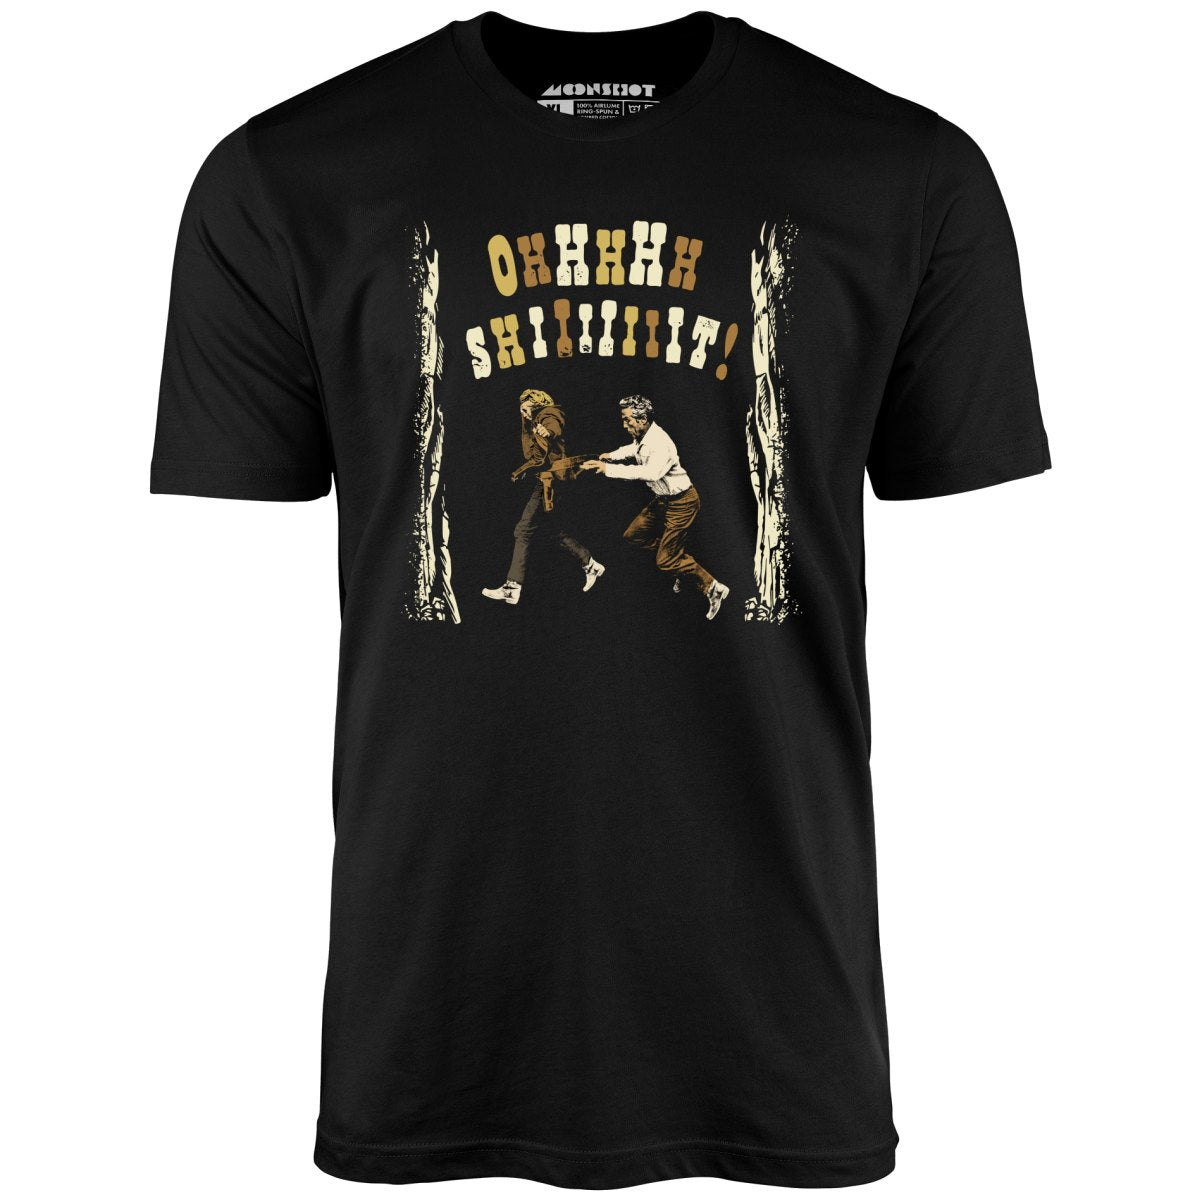 Ohhhhh Shiiiiiiit - Butch Cassidy & The Sundance Kid - Unisex T-Shirt